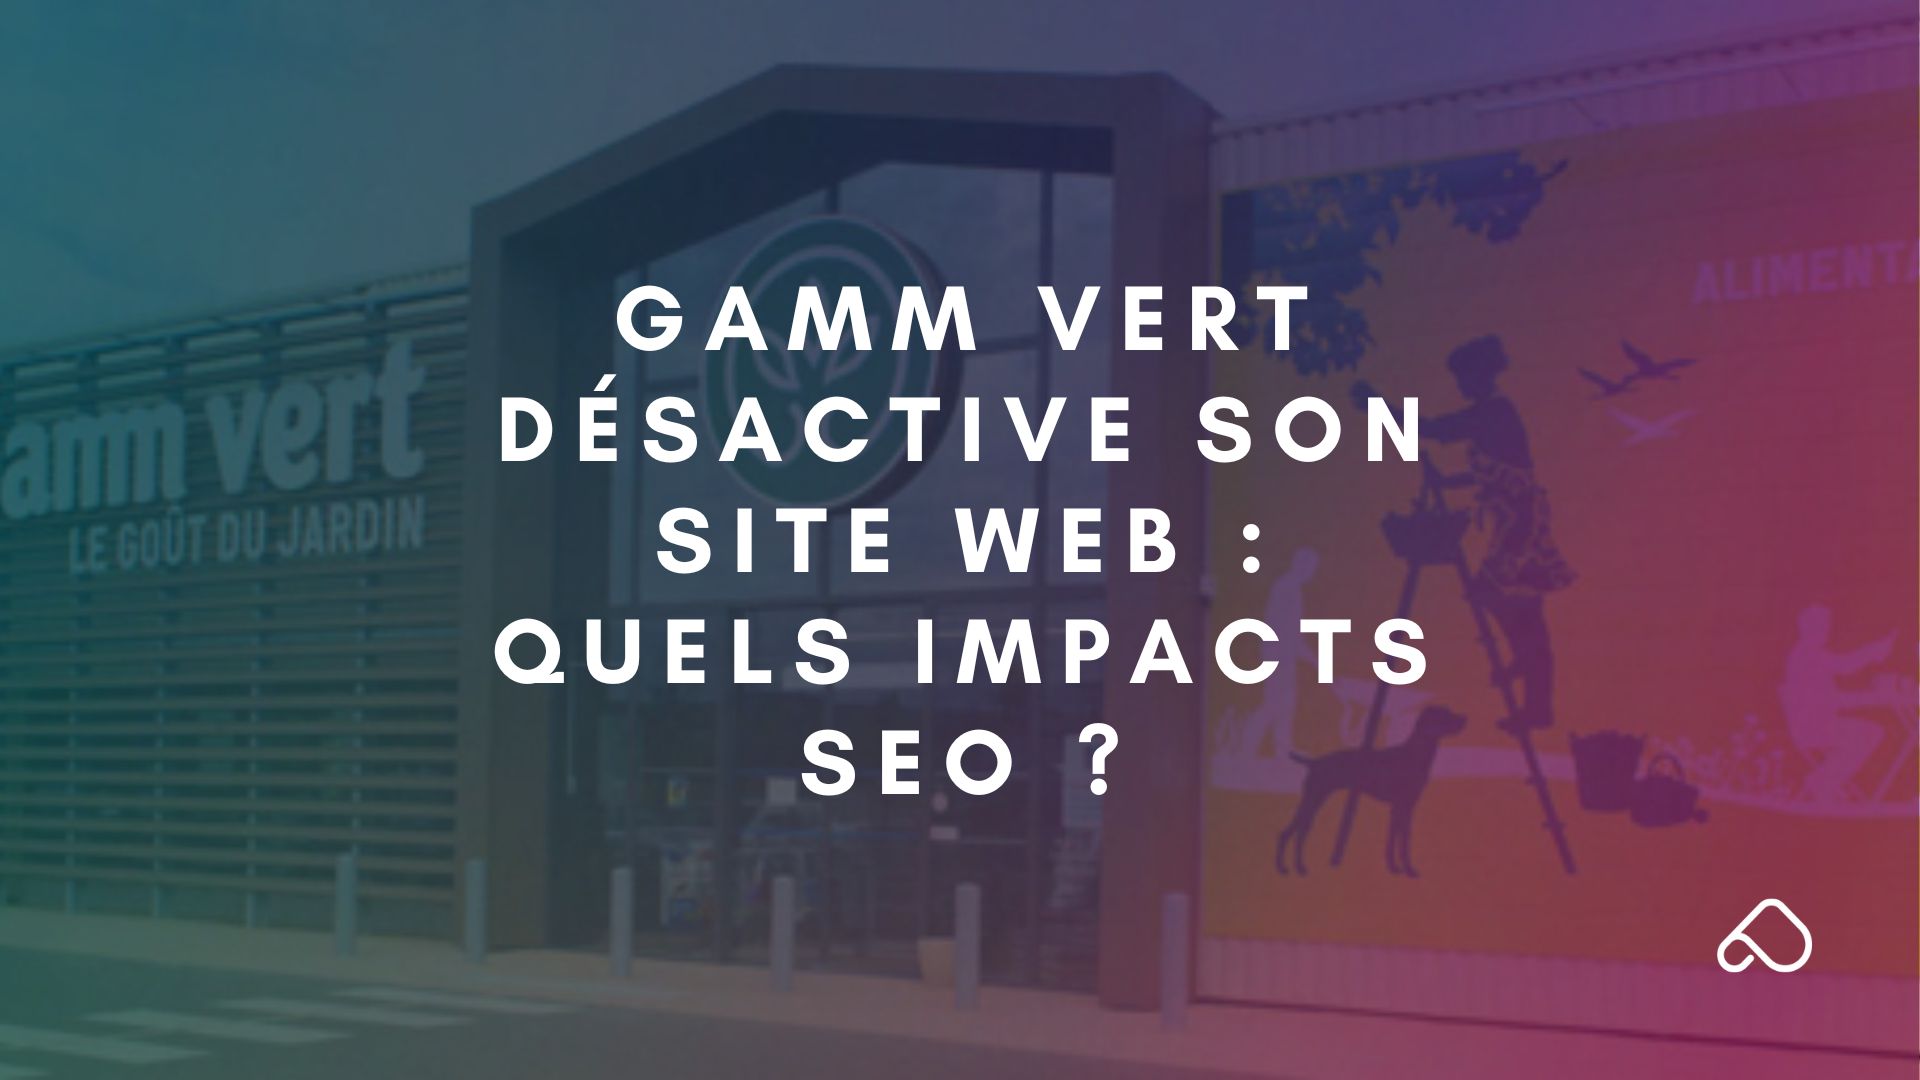 Gamm Vert désactive son site web quels impacts SEO